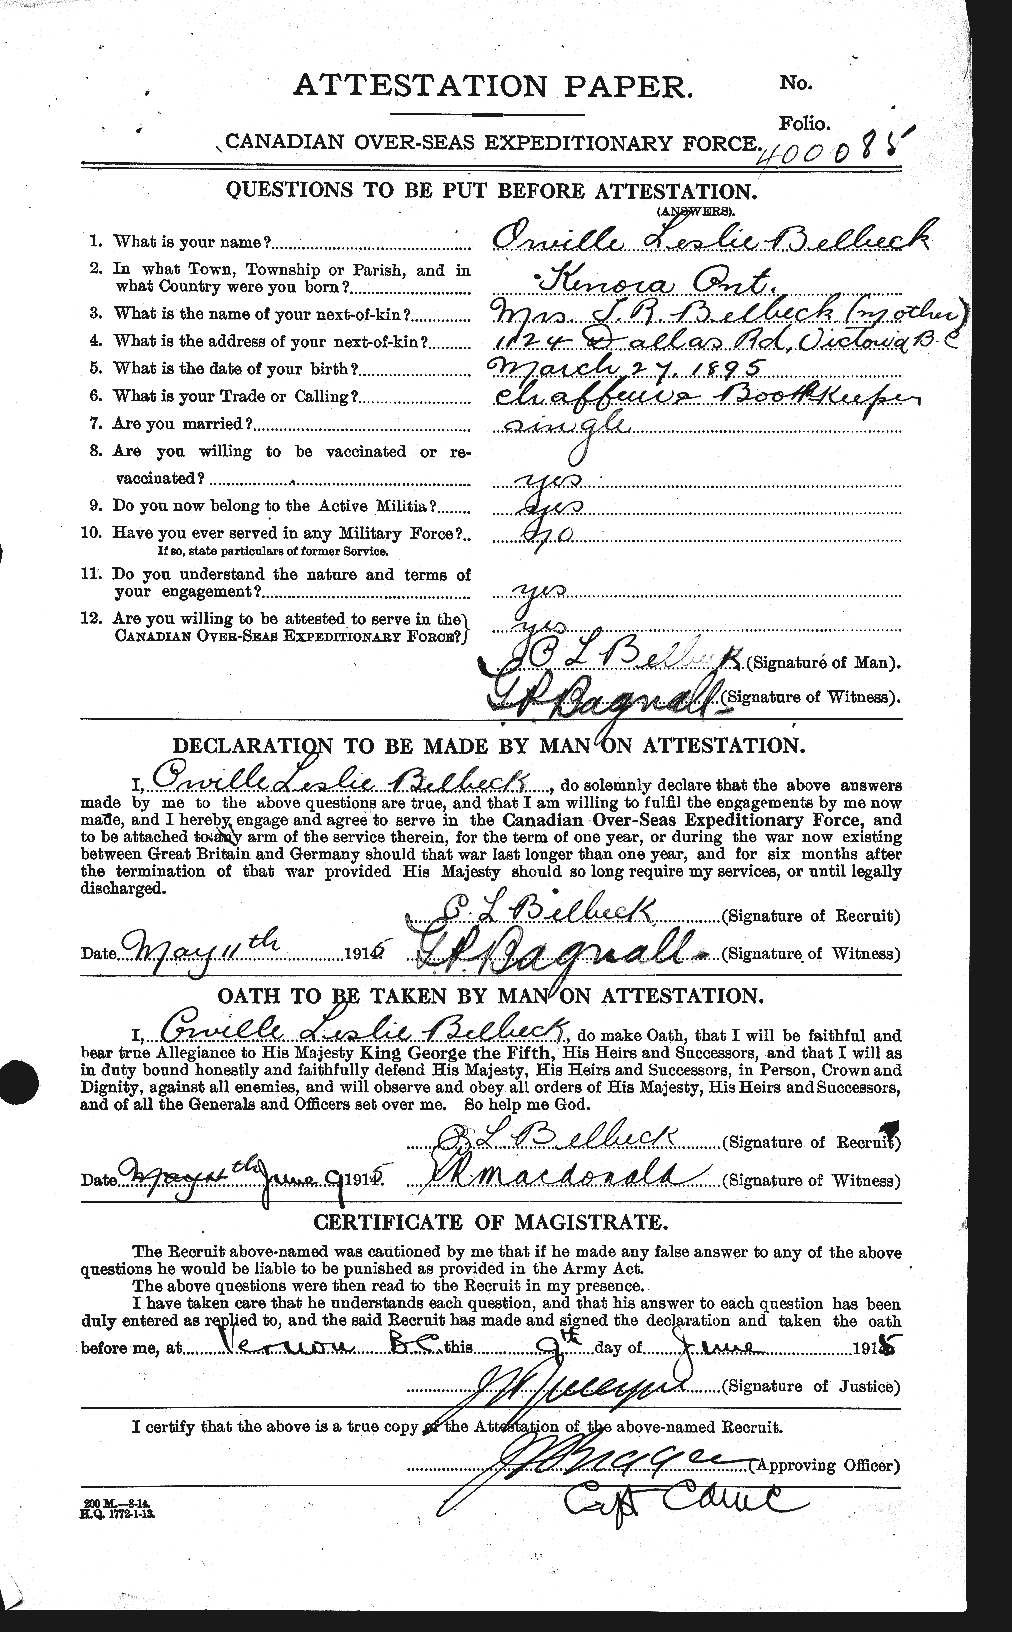 Dossiers du Personnel de la Première Guerre mondiale - CEC 232624a